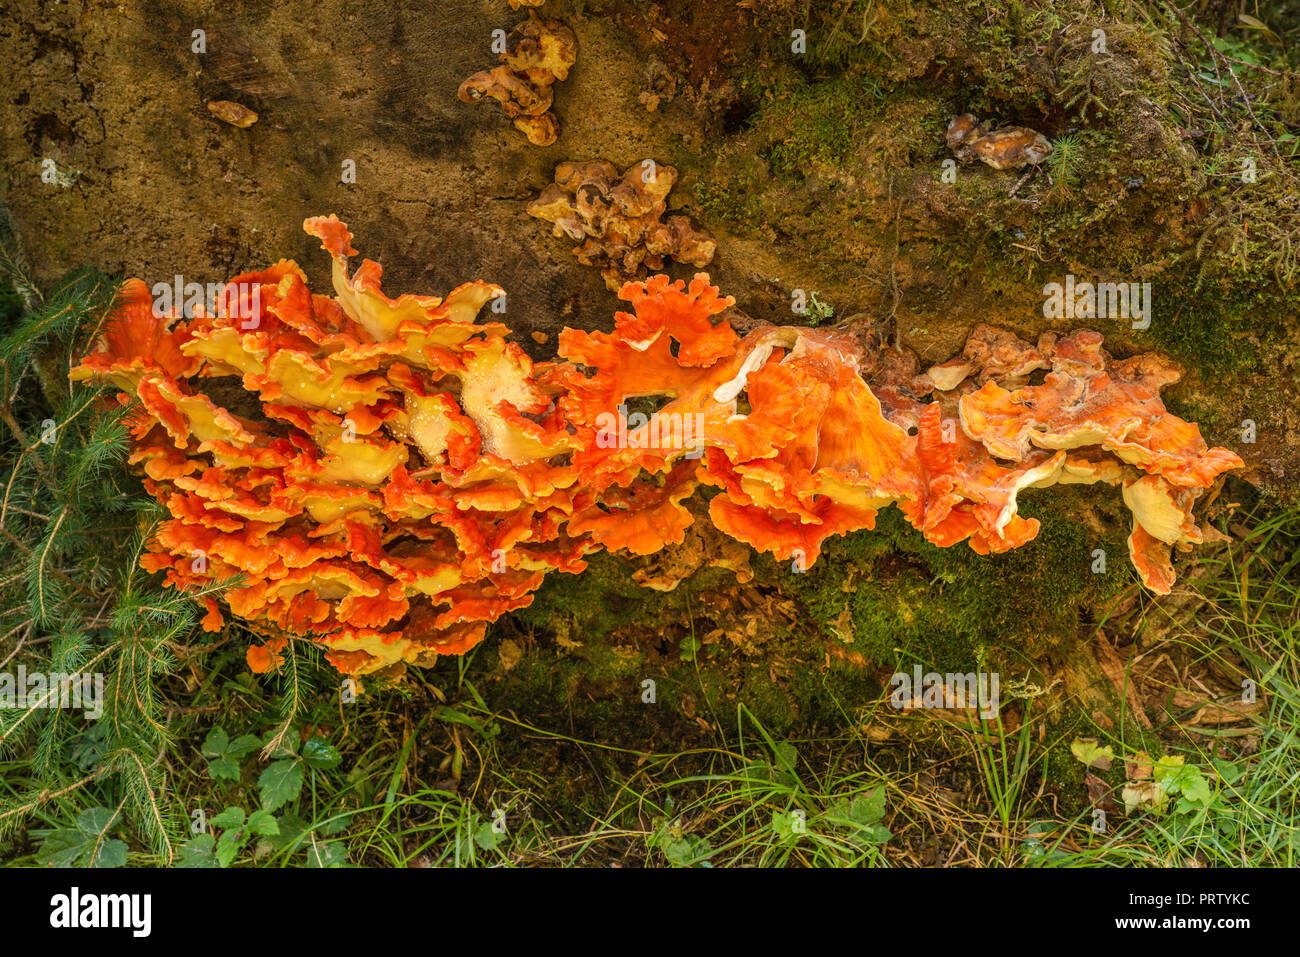 Champignons polypores support aka, ou la durée de champignons, growing on tree stump, sentier de la nature de l'épinette, Hoh Rain Forest, Olympic National Park, Washington State, USA Banque D'Images